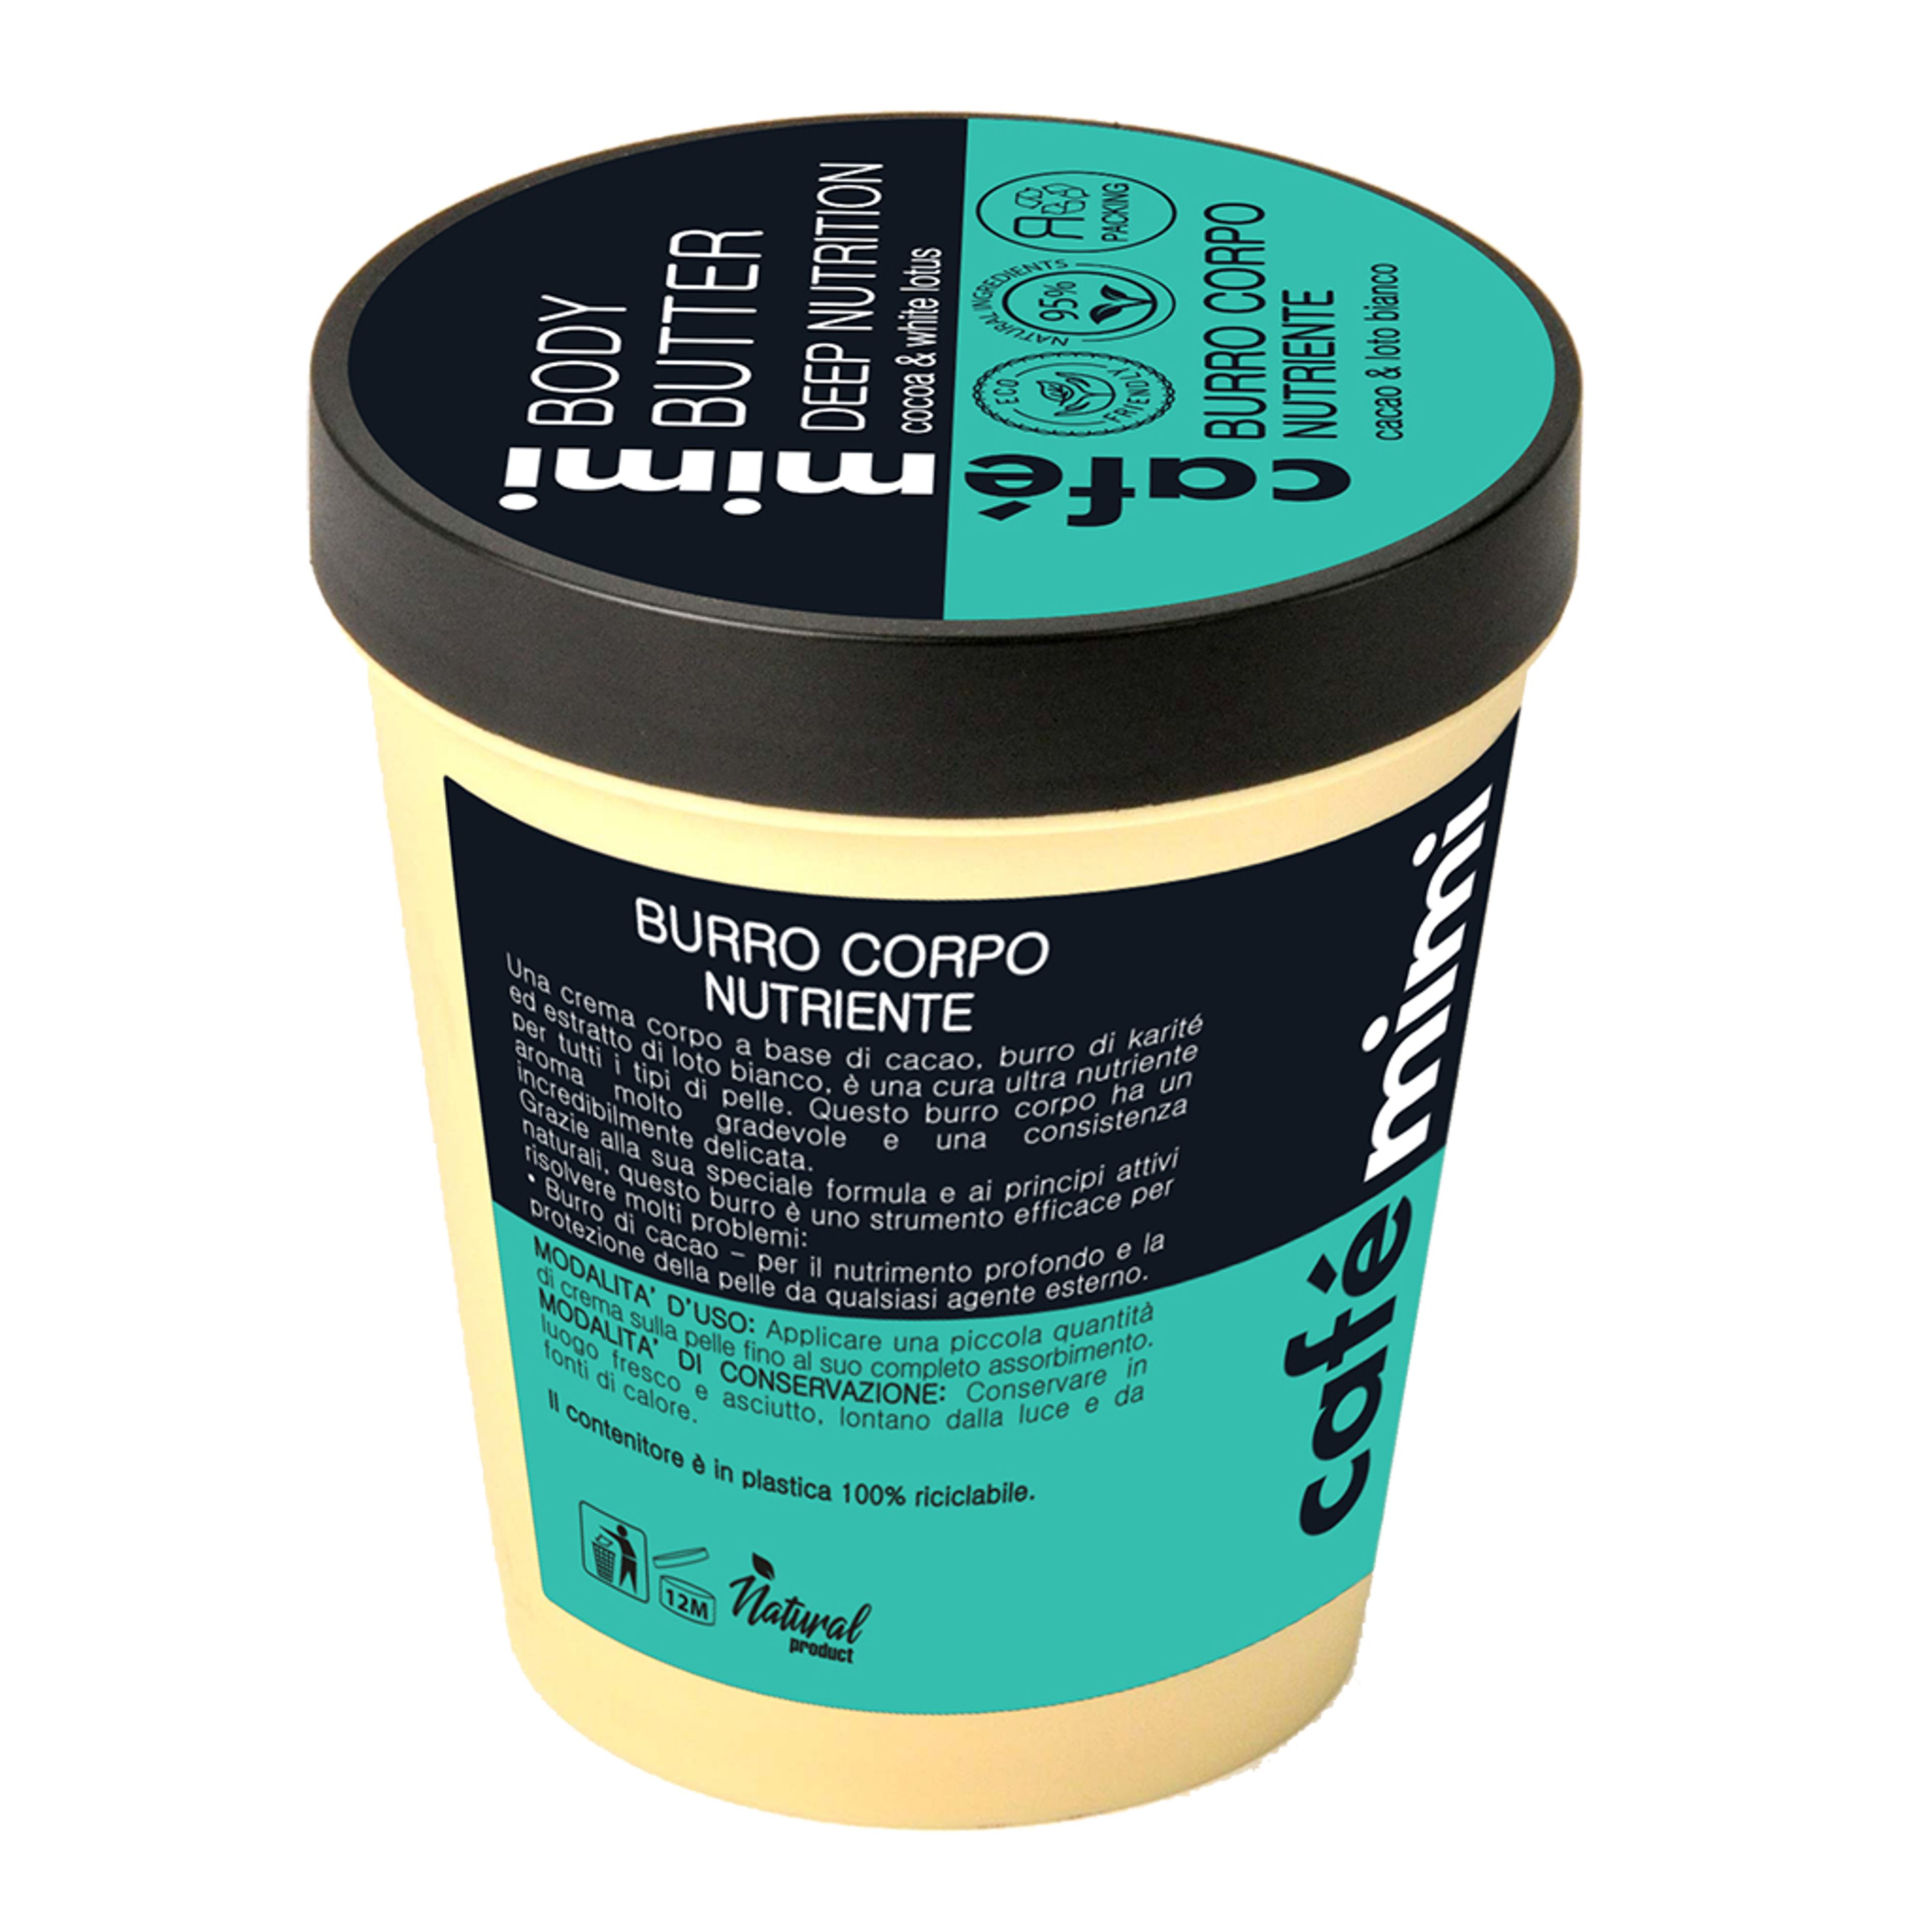 Burro Corpo Nutriente
cacao & Loto Bianco Café Mimi 2